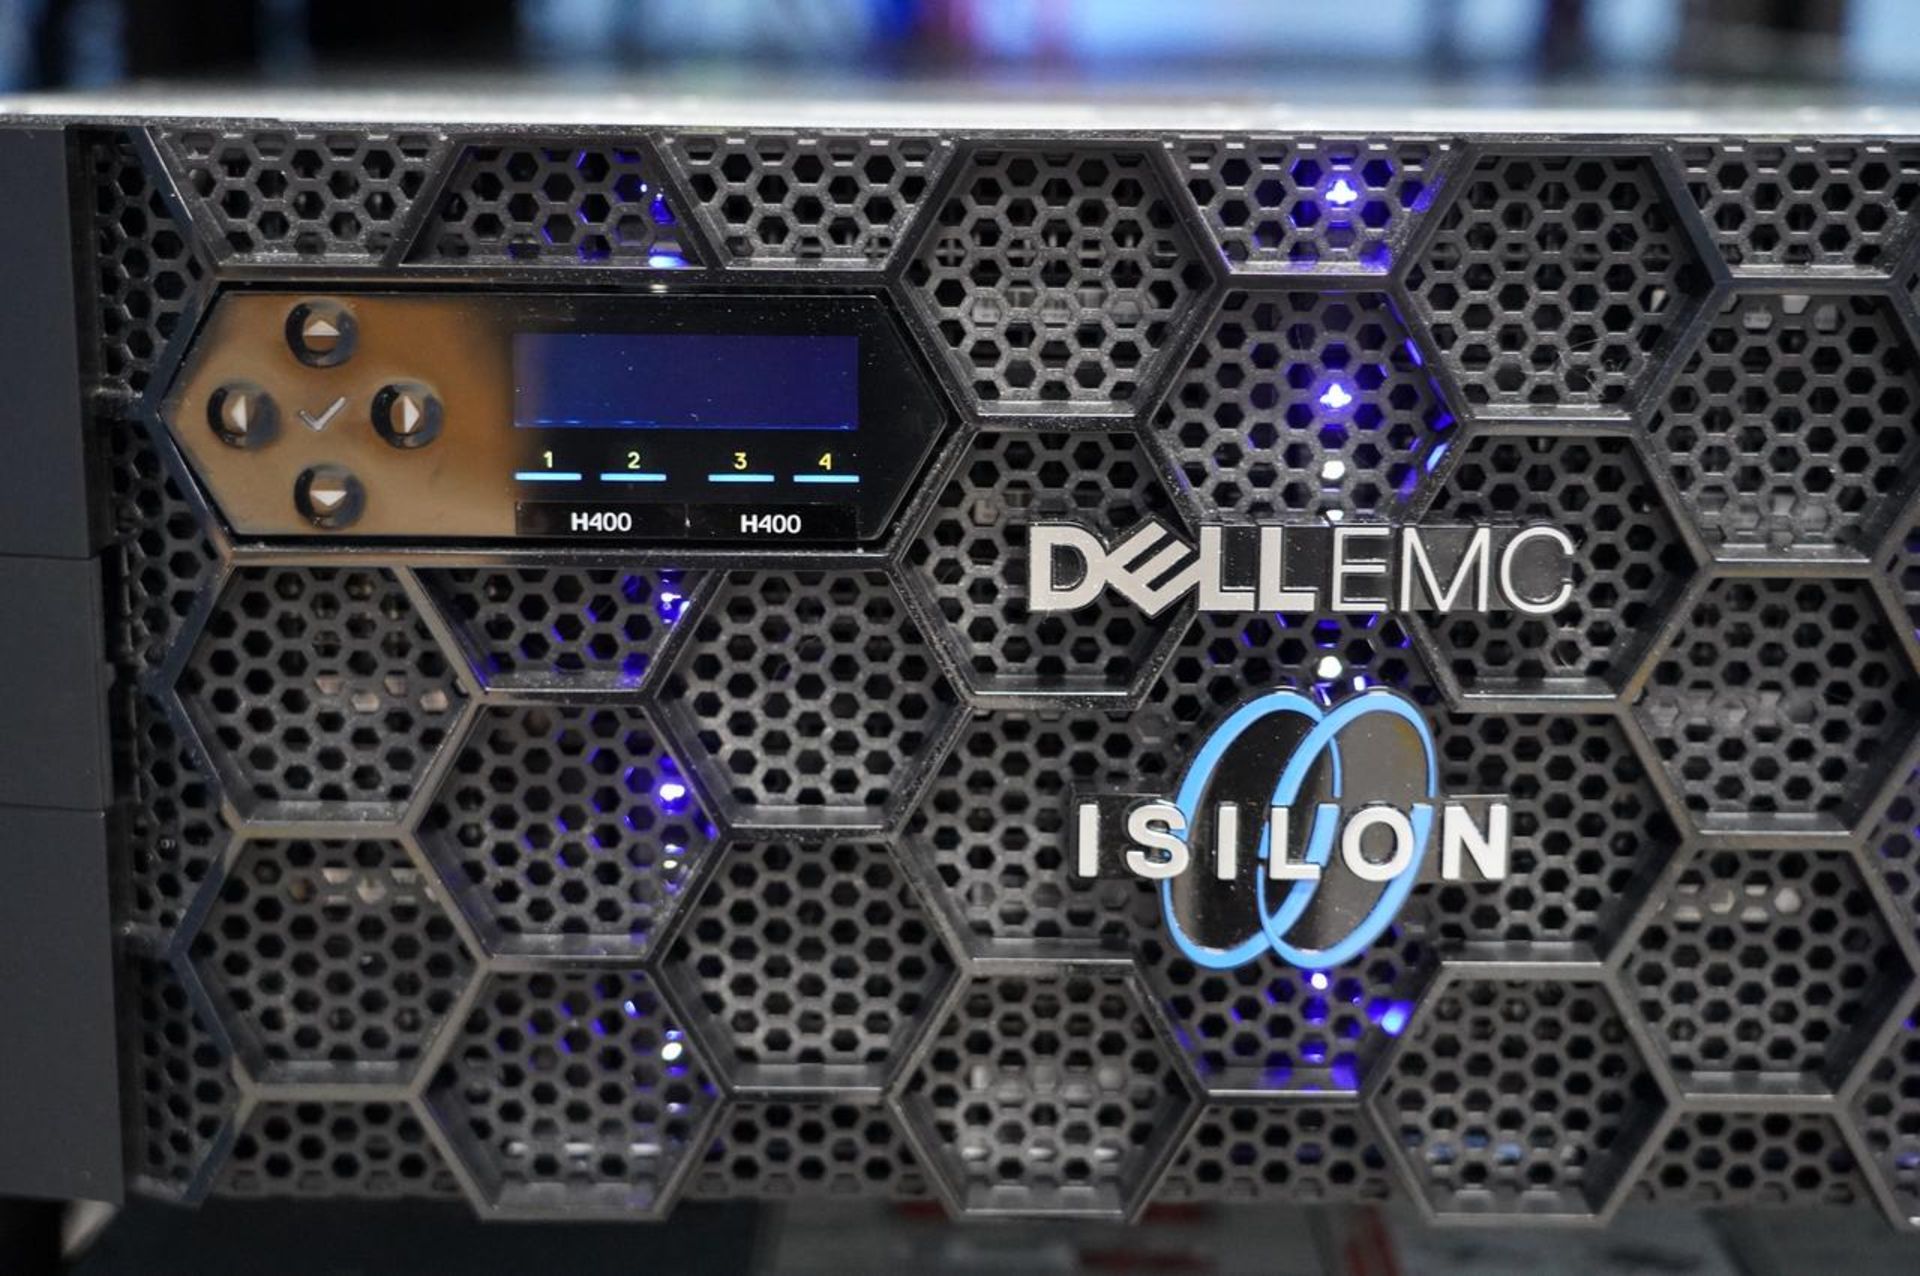 Dell Dell/EMC Isilon H400 Enterprise Storage - Image 2 of 6